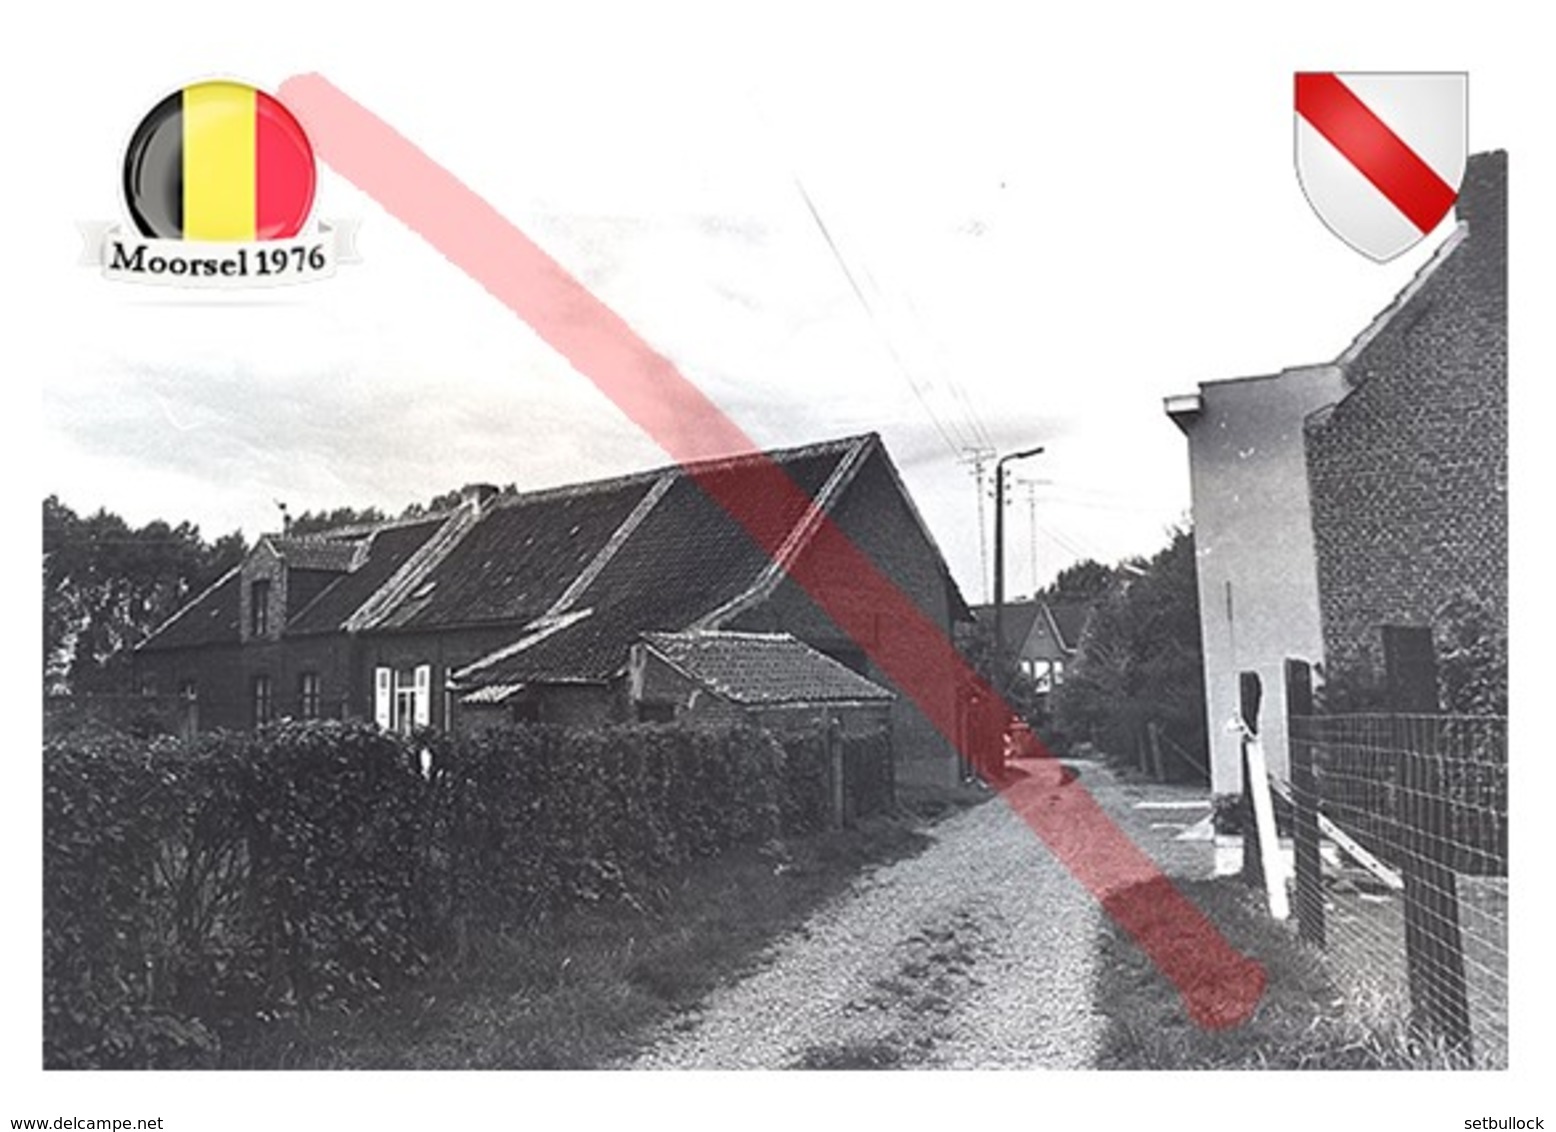 Moorsel, Aalst | Belgium | Commune | Postcard Modern Ukraine - Maps